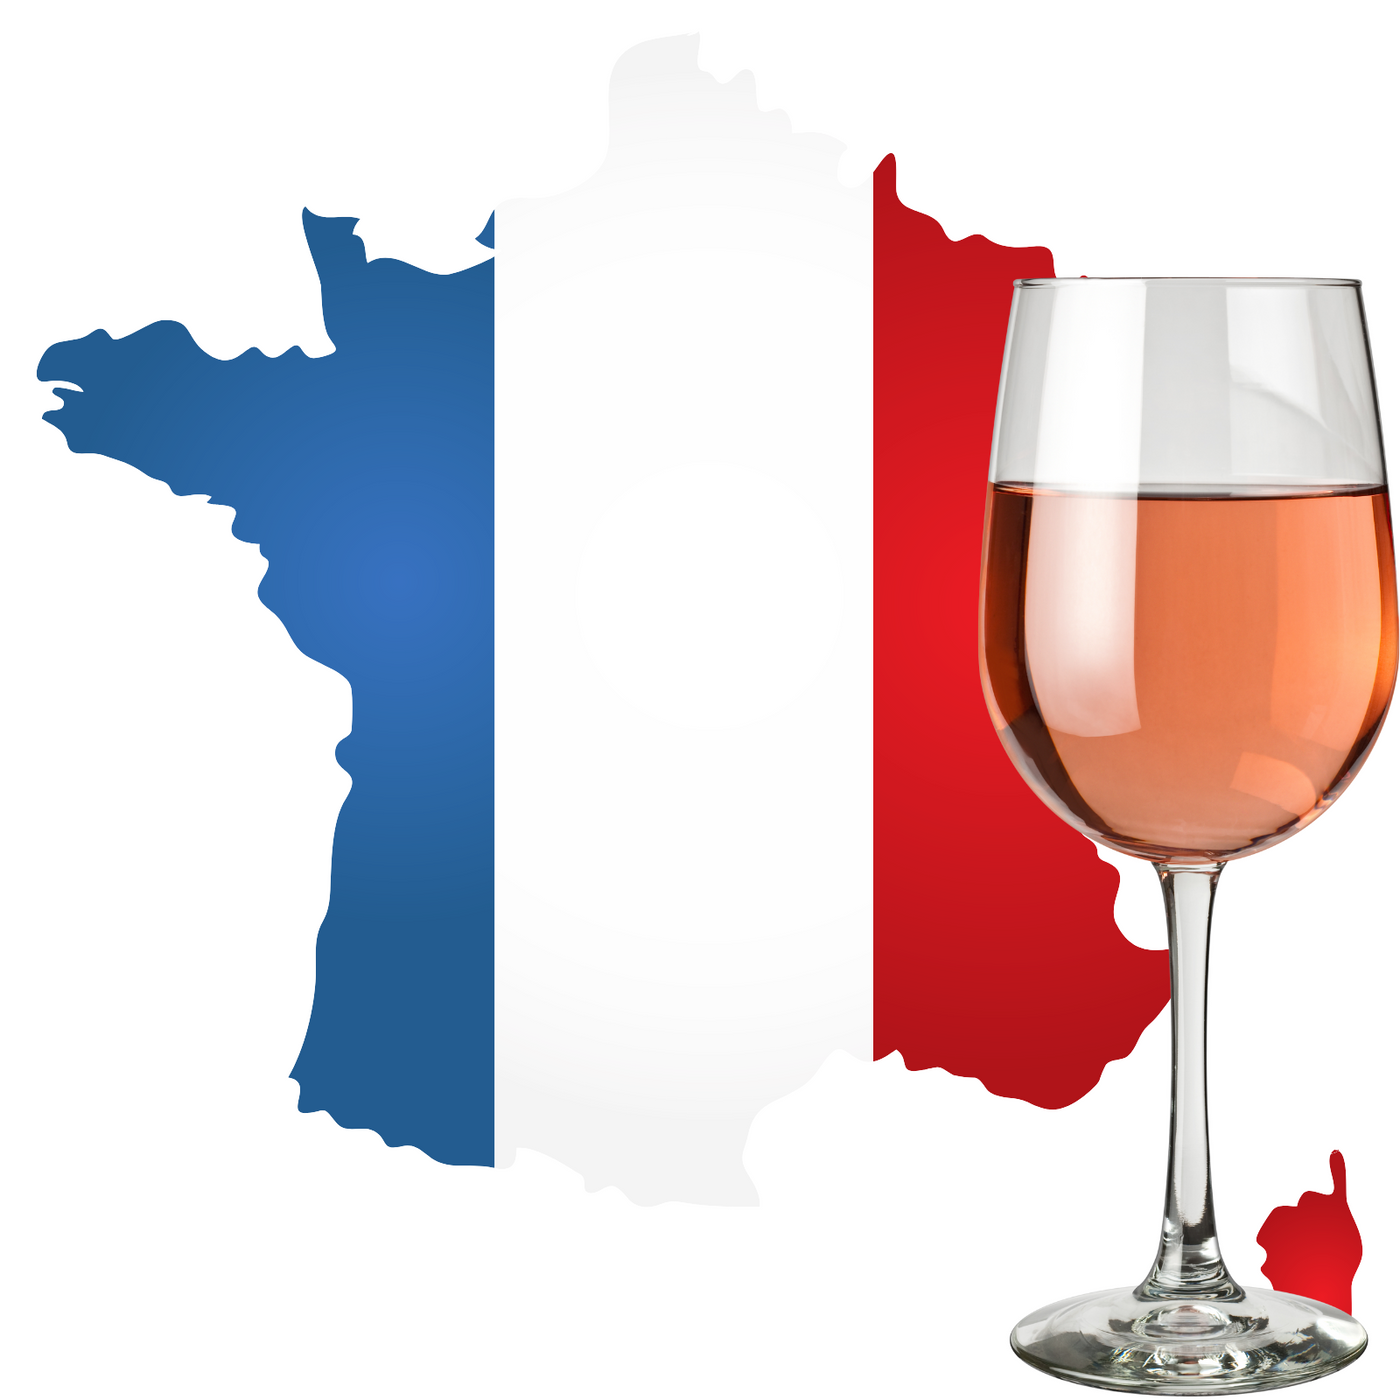 Franse rosé wijn kopen bij Flesjewijn.com